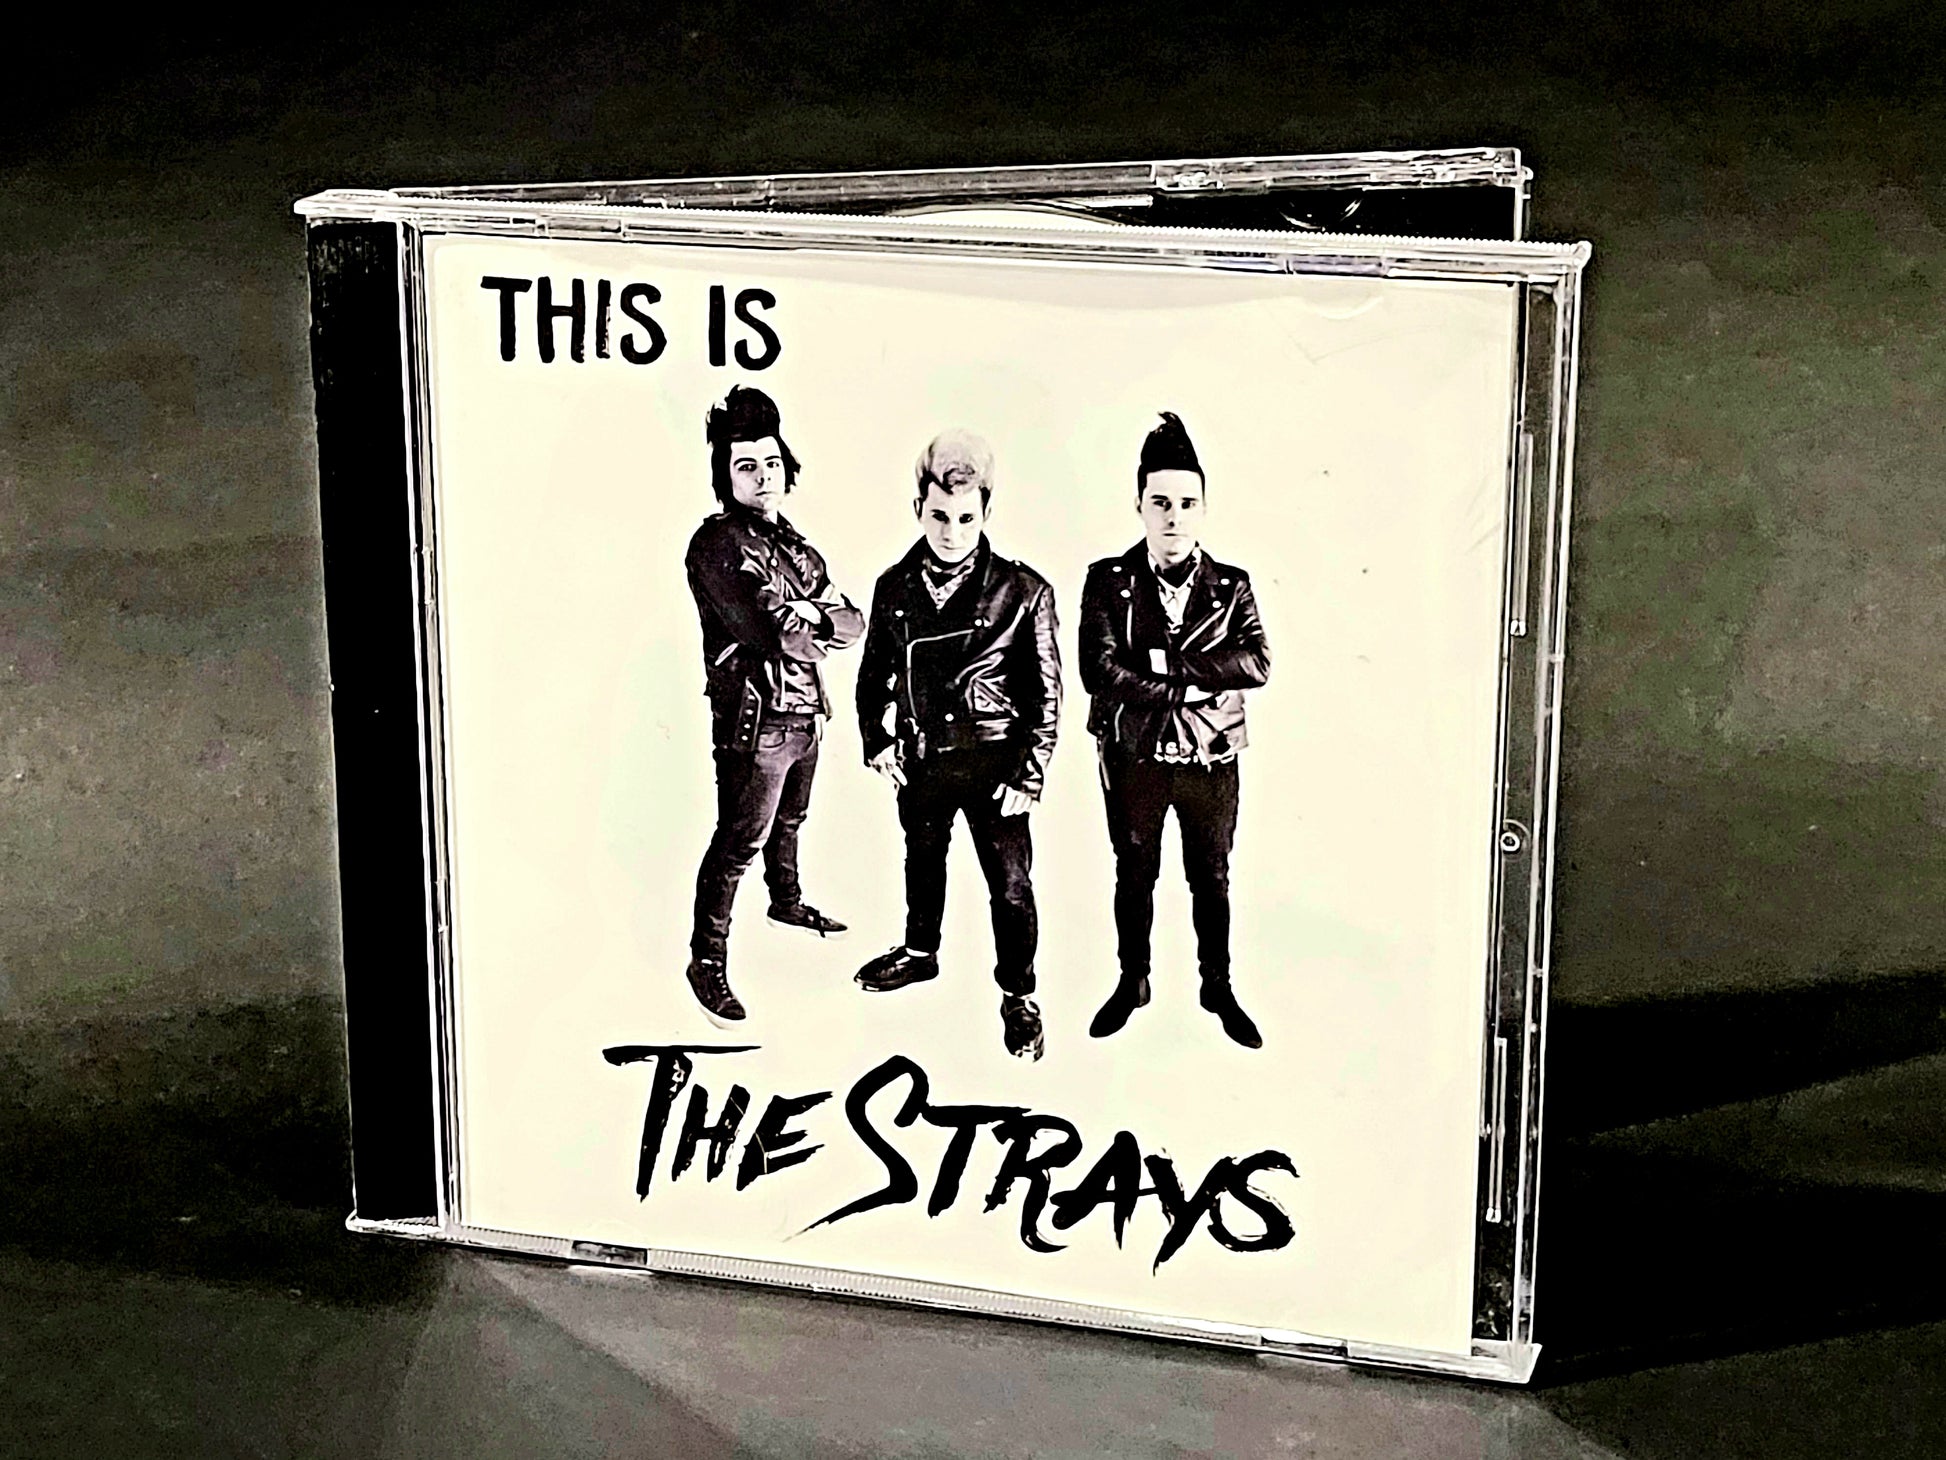 The Strays - "This is The Strays" - Original CD (2016) - Rockabilly Australia Pty Ltd